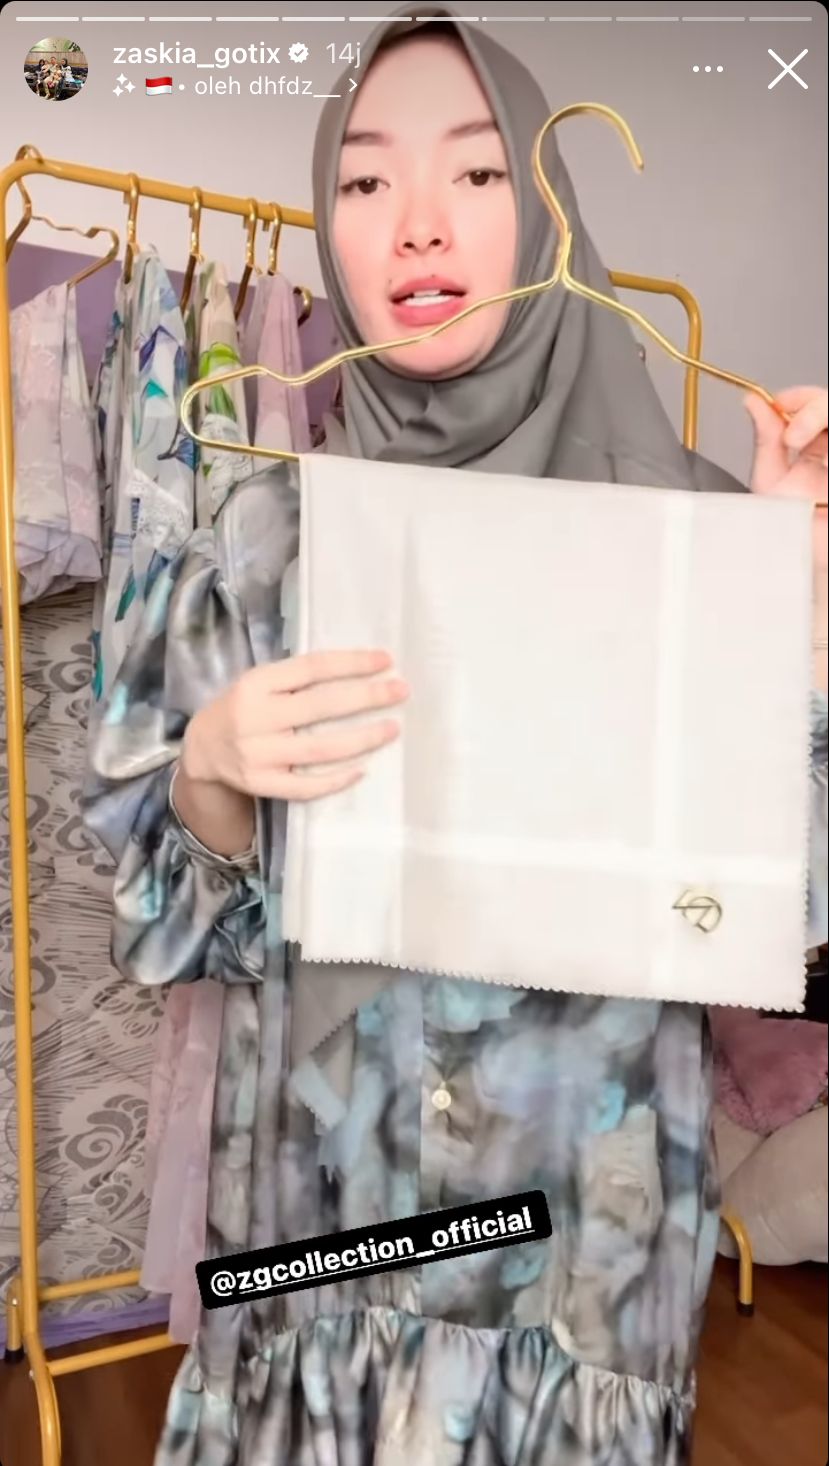 Hasil jahit dengan tangan sendiri, begini 9 potret Zaskia Gotik banting stir jualan baju dan hijab